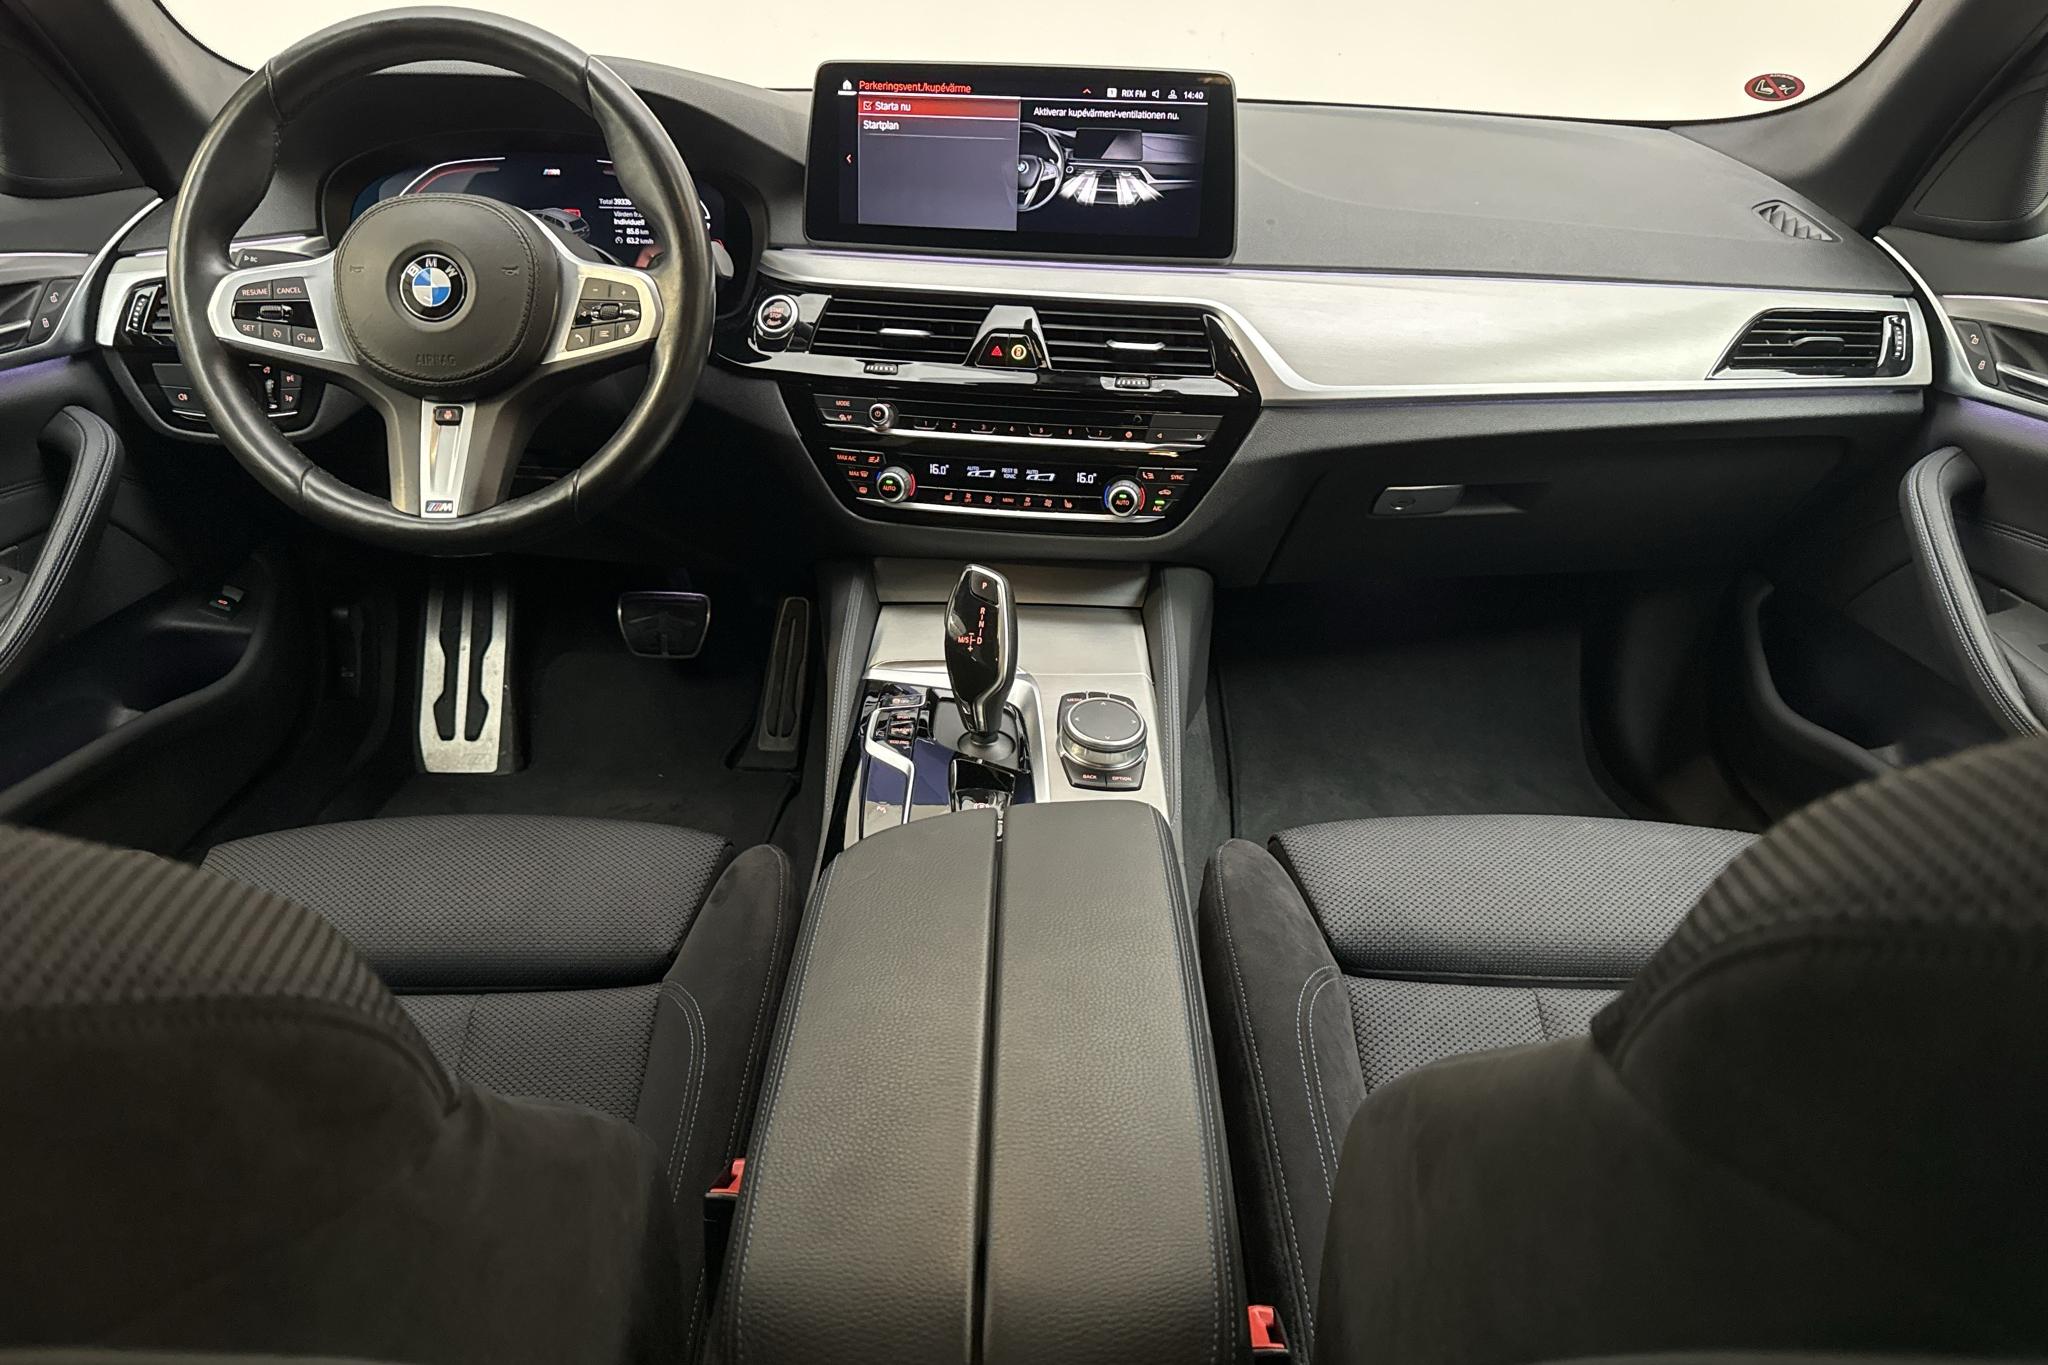 BMW 520d xDrive Touring, G31 LCI (190hk+11hk) - 3 933 mil - Automat - svart - 2021